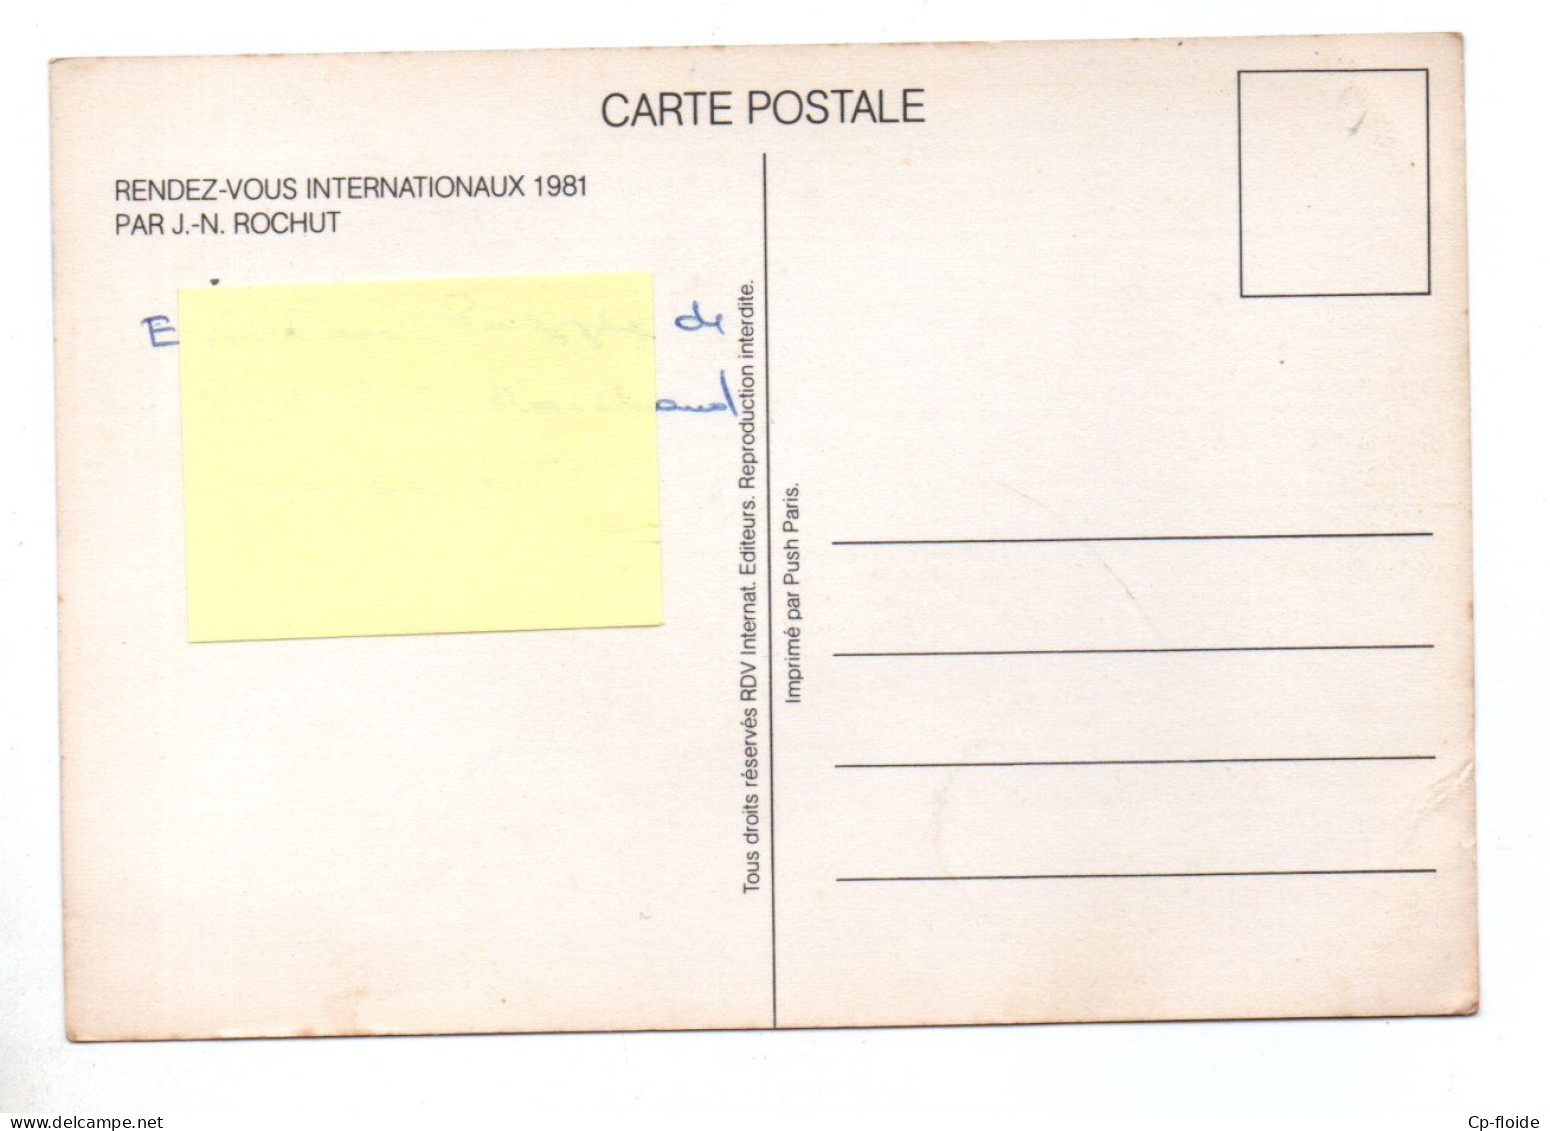 BOURSE DE COLLECTIONNEURS . PARIS-HILTON . " RENDEZ-VOUS INTERNATIONAUX1981 " . AFFICHE PAR J.N. ROCHUT - Réf. N°38826 - - Bourses & Salons De Collections